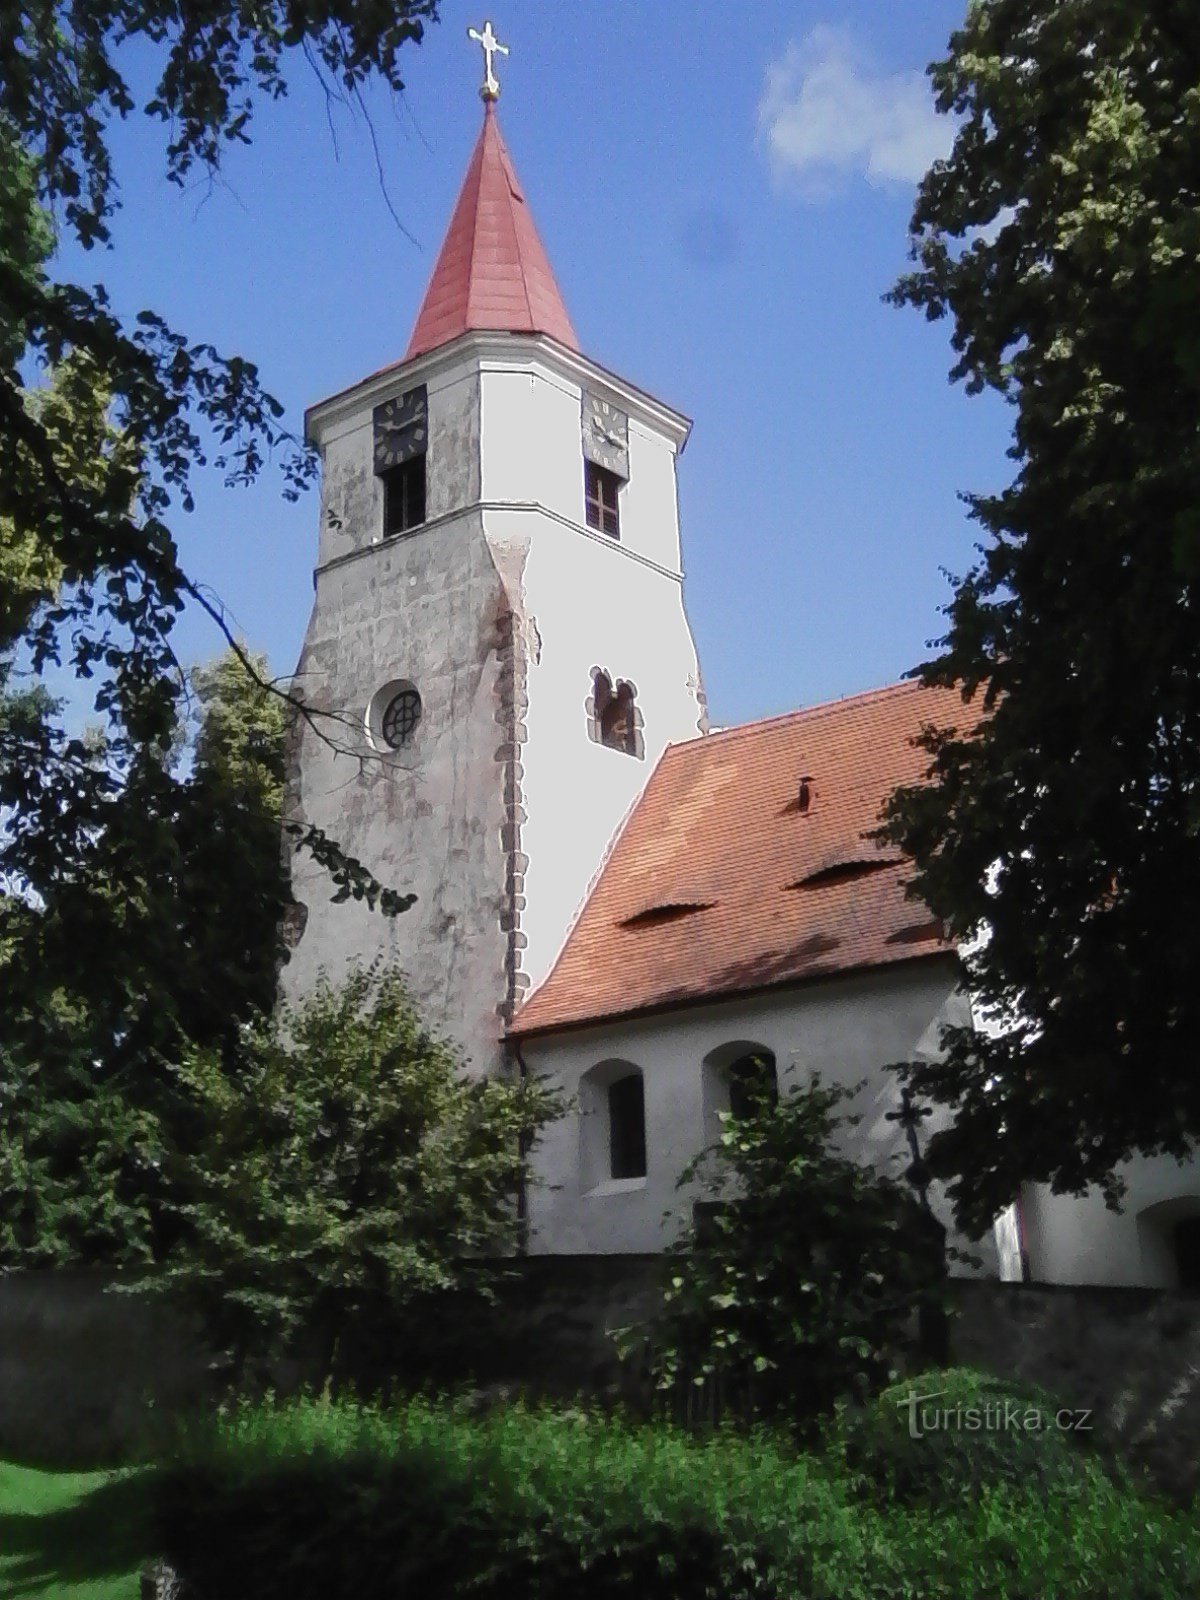 2. Nhà thờ St. Mikuláš ở Nechvalice, có lẽ từ khoảng năm 1240.